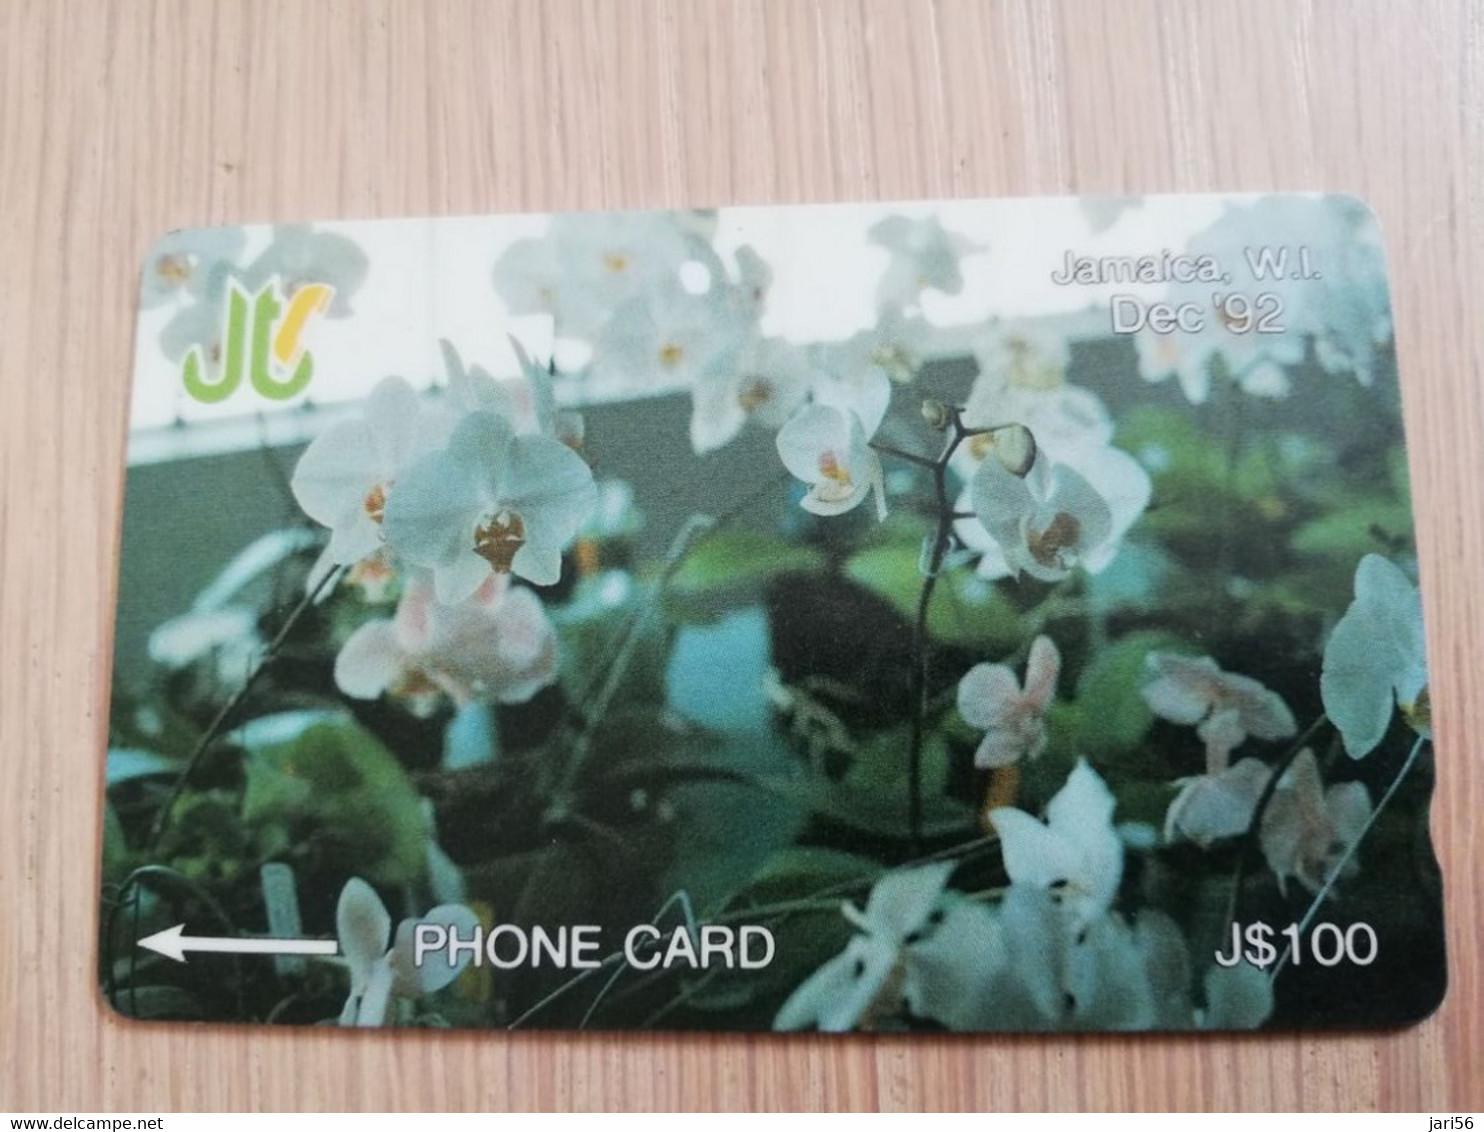 JAMAICA  J$100-  GPT CARD   DECEMBER 92 ORCHIDS CONTROL NR: 13JAMC   Fine Used Card  **3233** - Giamaica